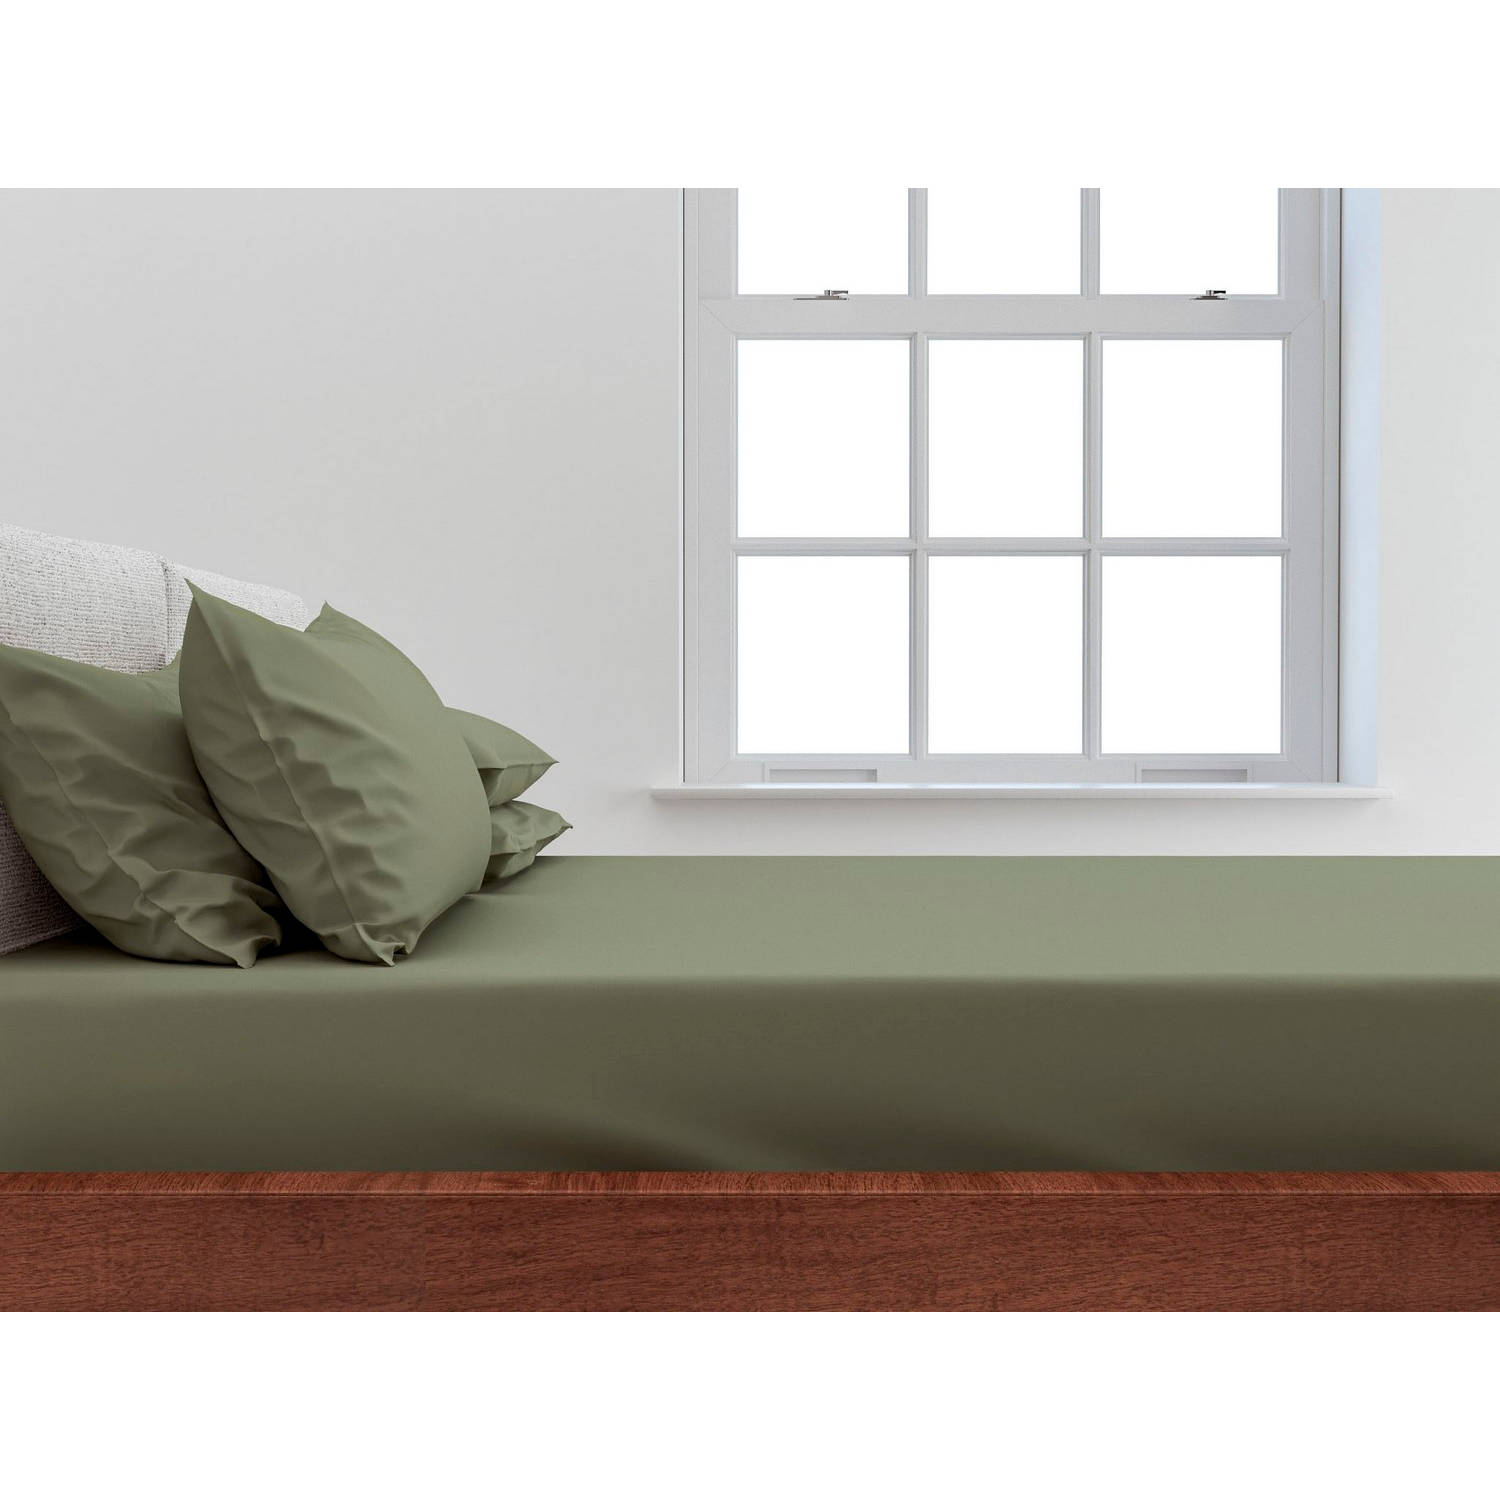 ZO! Home Satinado katoen/satijn hoeslaken groen - eenpersoons (90x200) - luxe uitstraling - perfect passend